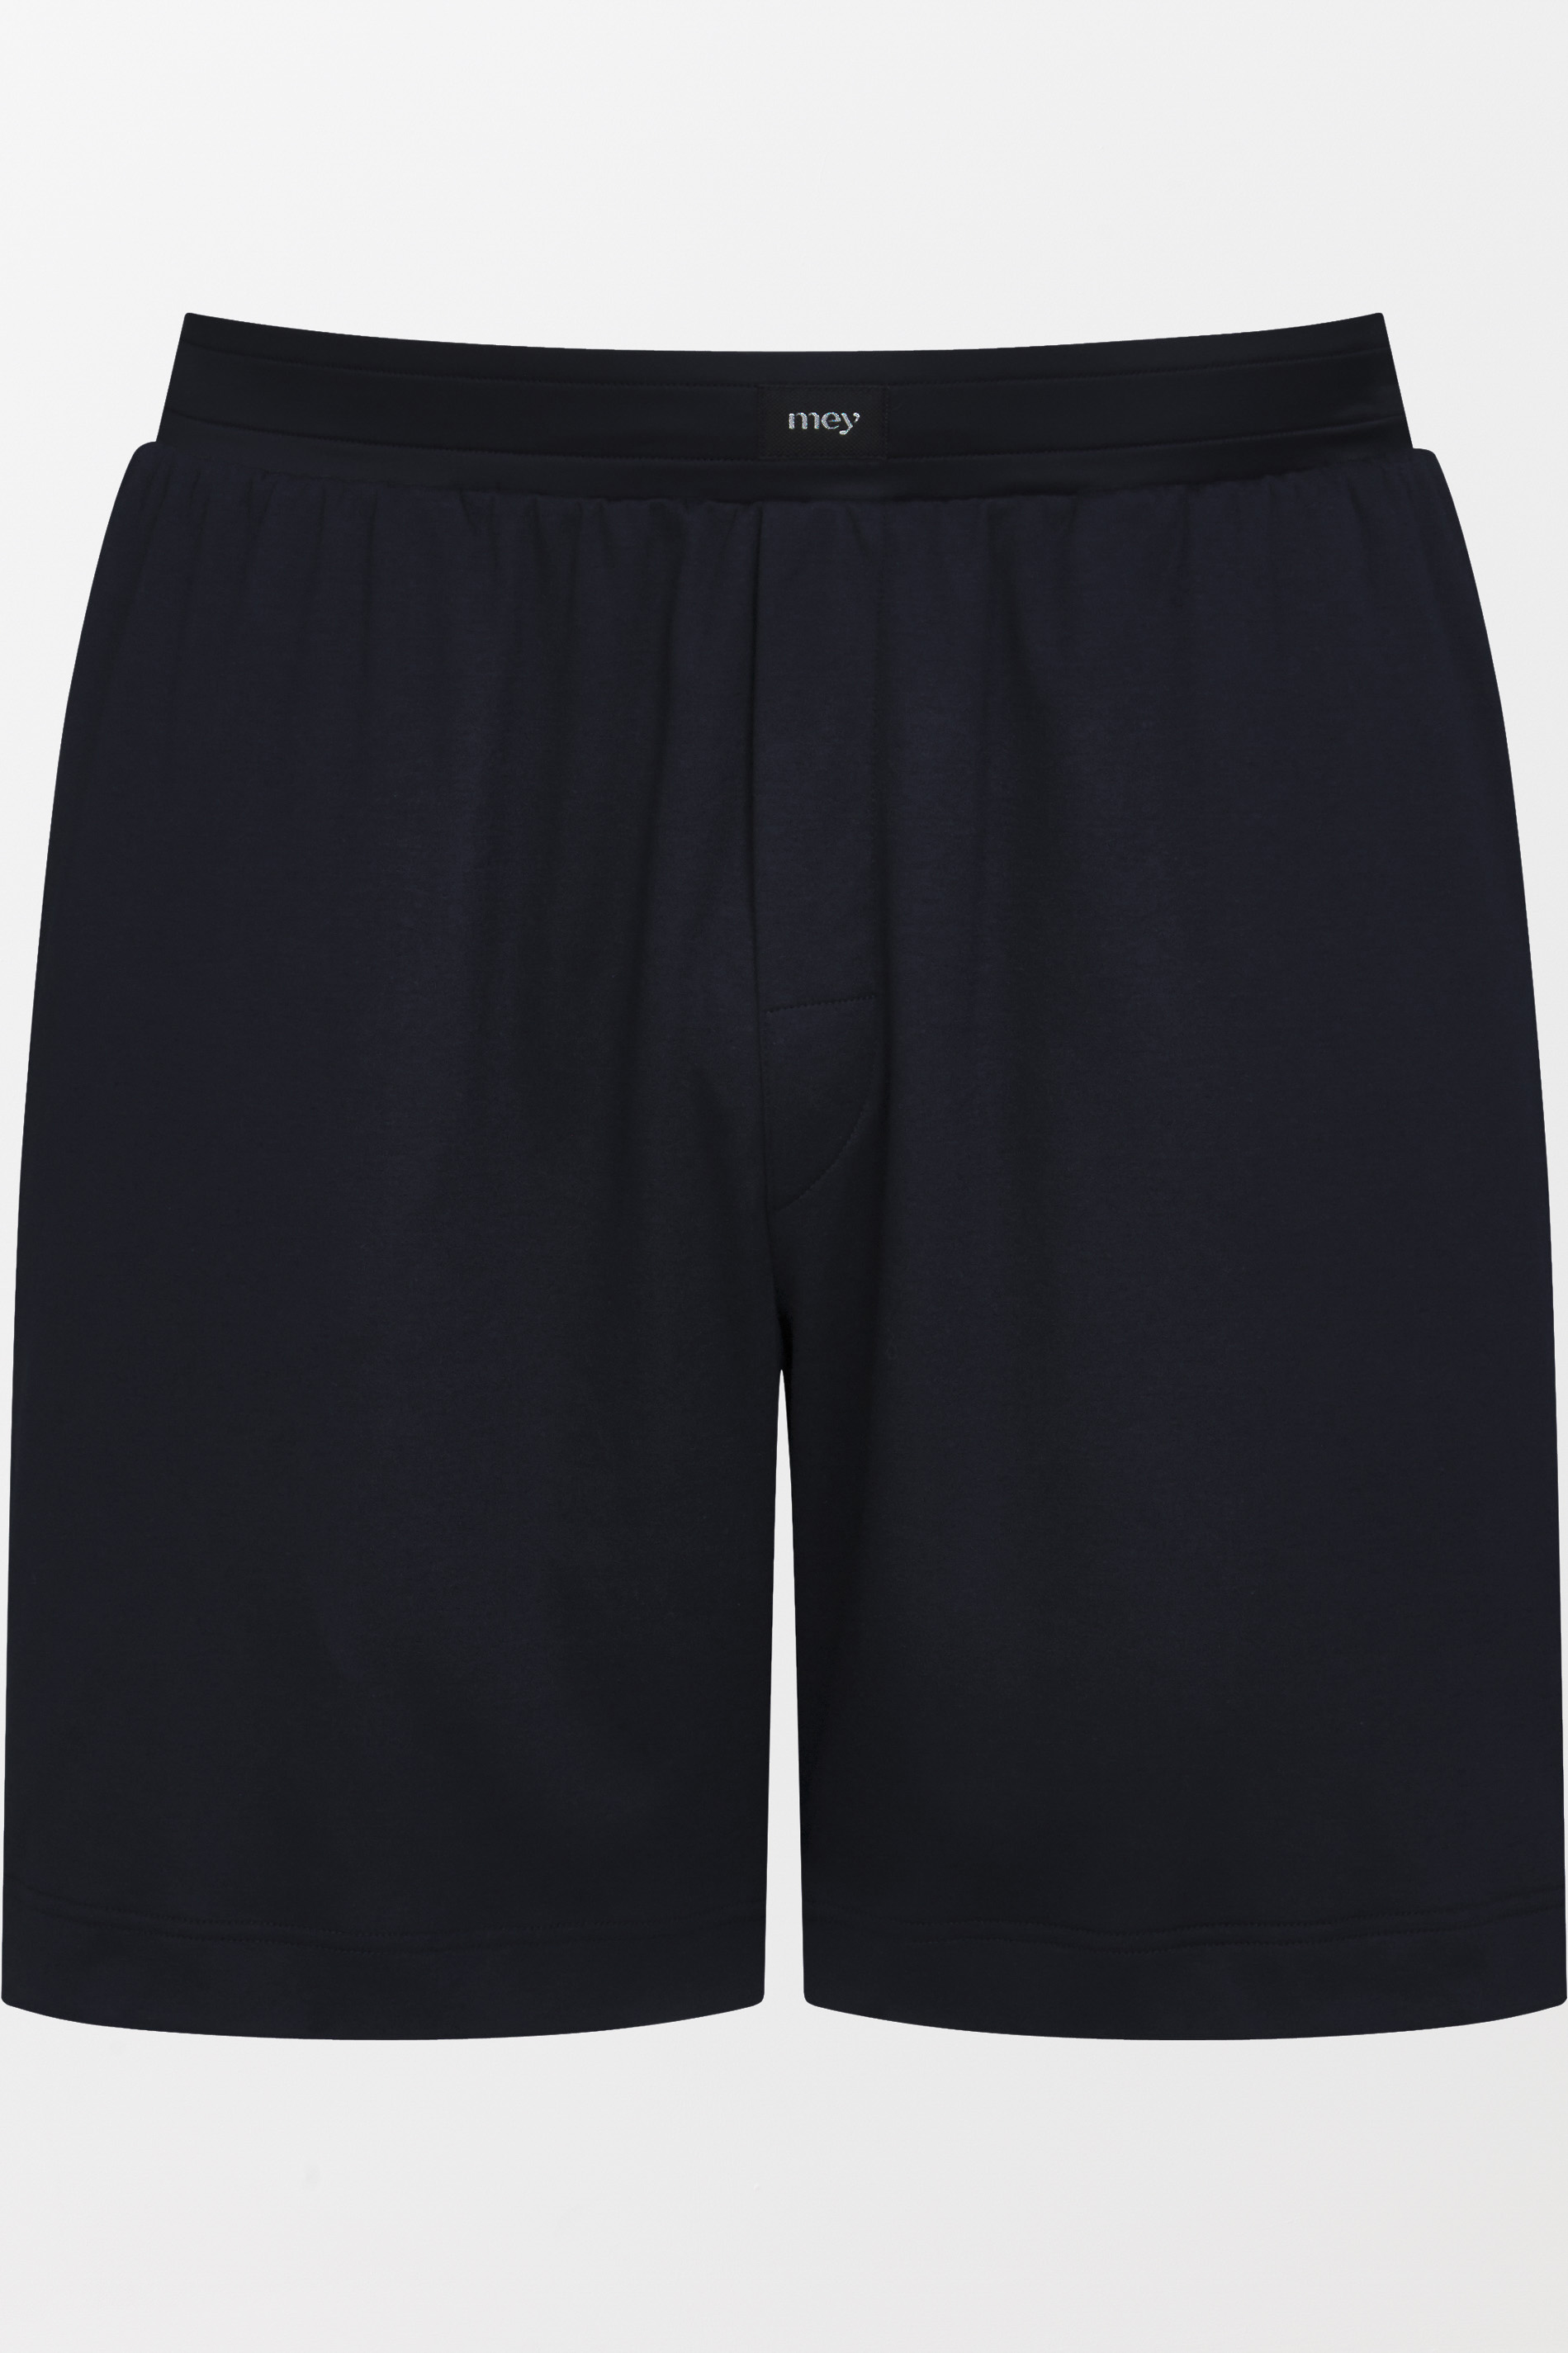 Short pants Indigo Serie Aarhus Uitknippen | mey®